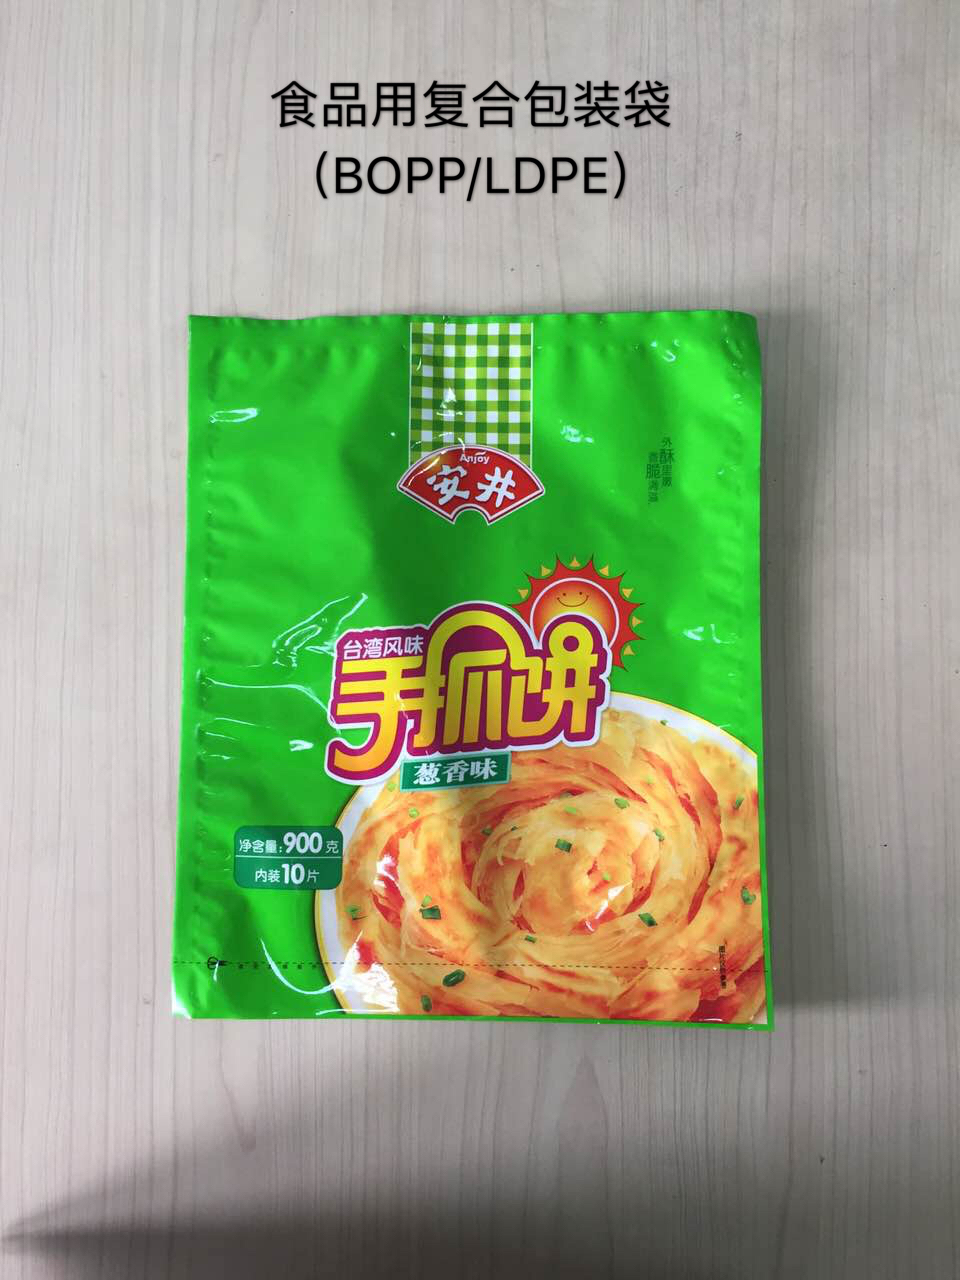 食品用复合包装袋BOPP检测 专业提供BOPP/LDPE材质复合包装袋检测 BOPP/LDPE食品用包装袋检测联系电话